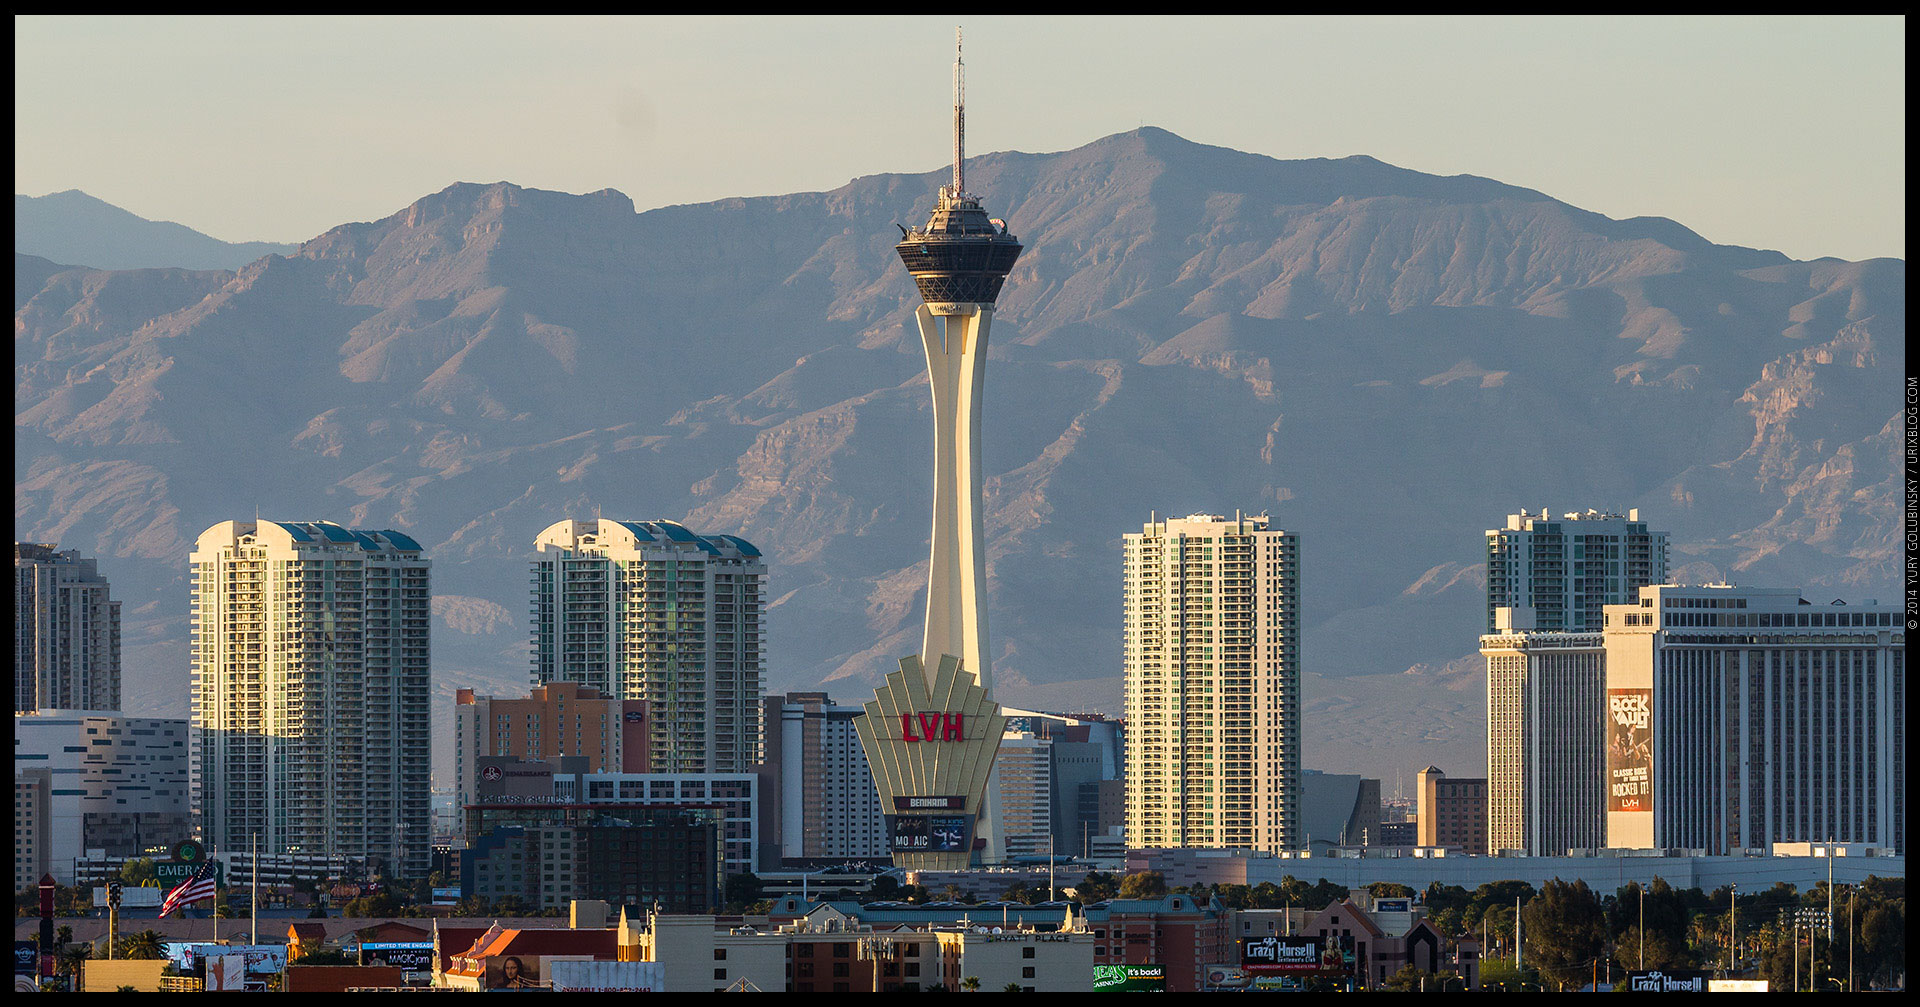 Stratosphere tower, casino, hotel, mountains, 2014, LAS, Las Vegas McCarran International airport, strip, LV, Clark County, USA, Nevada, panorama, horizon, city